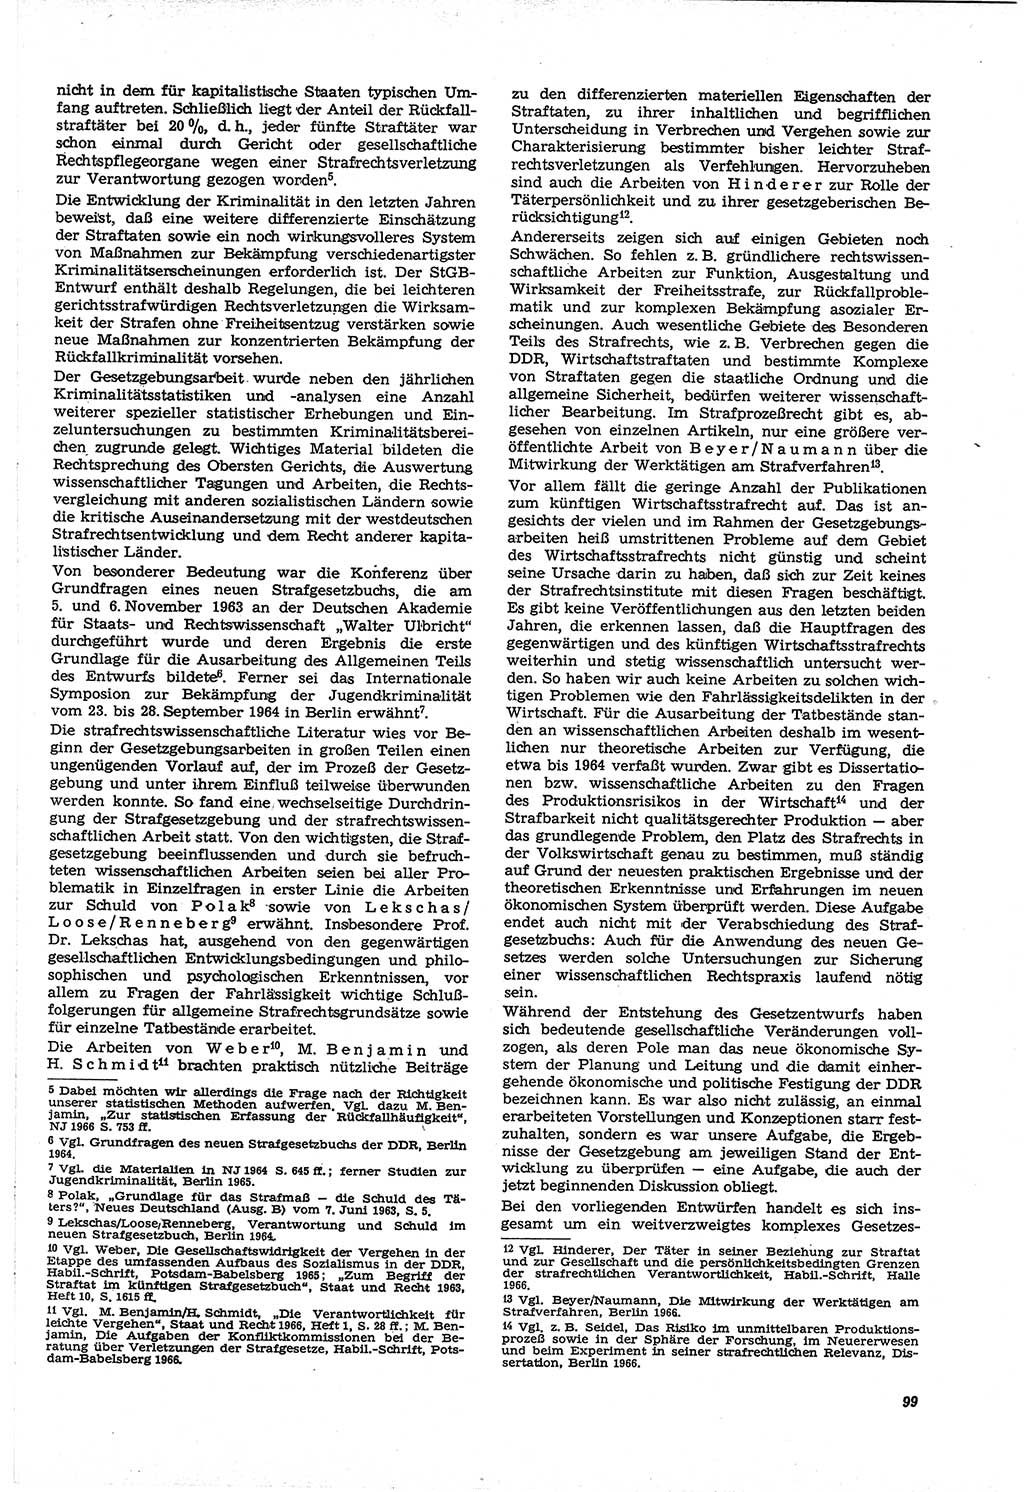 Neue Justiz (NJ), Zeitschrift für Recht und Rechtswissenschaft [Deutsche Demokratische Republik (DDR)], 21. Jahrgang 1967, Seite 99 (NJ DDR 1967, S. 99)